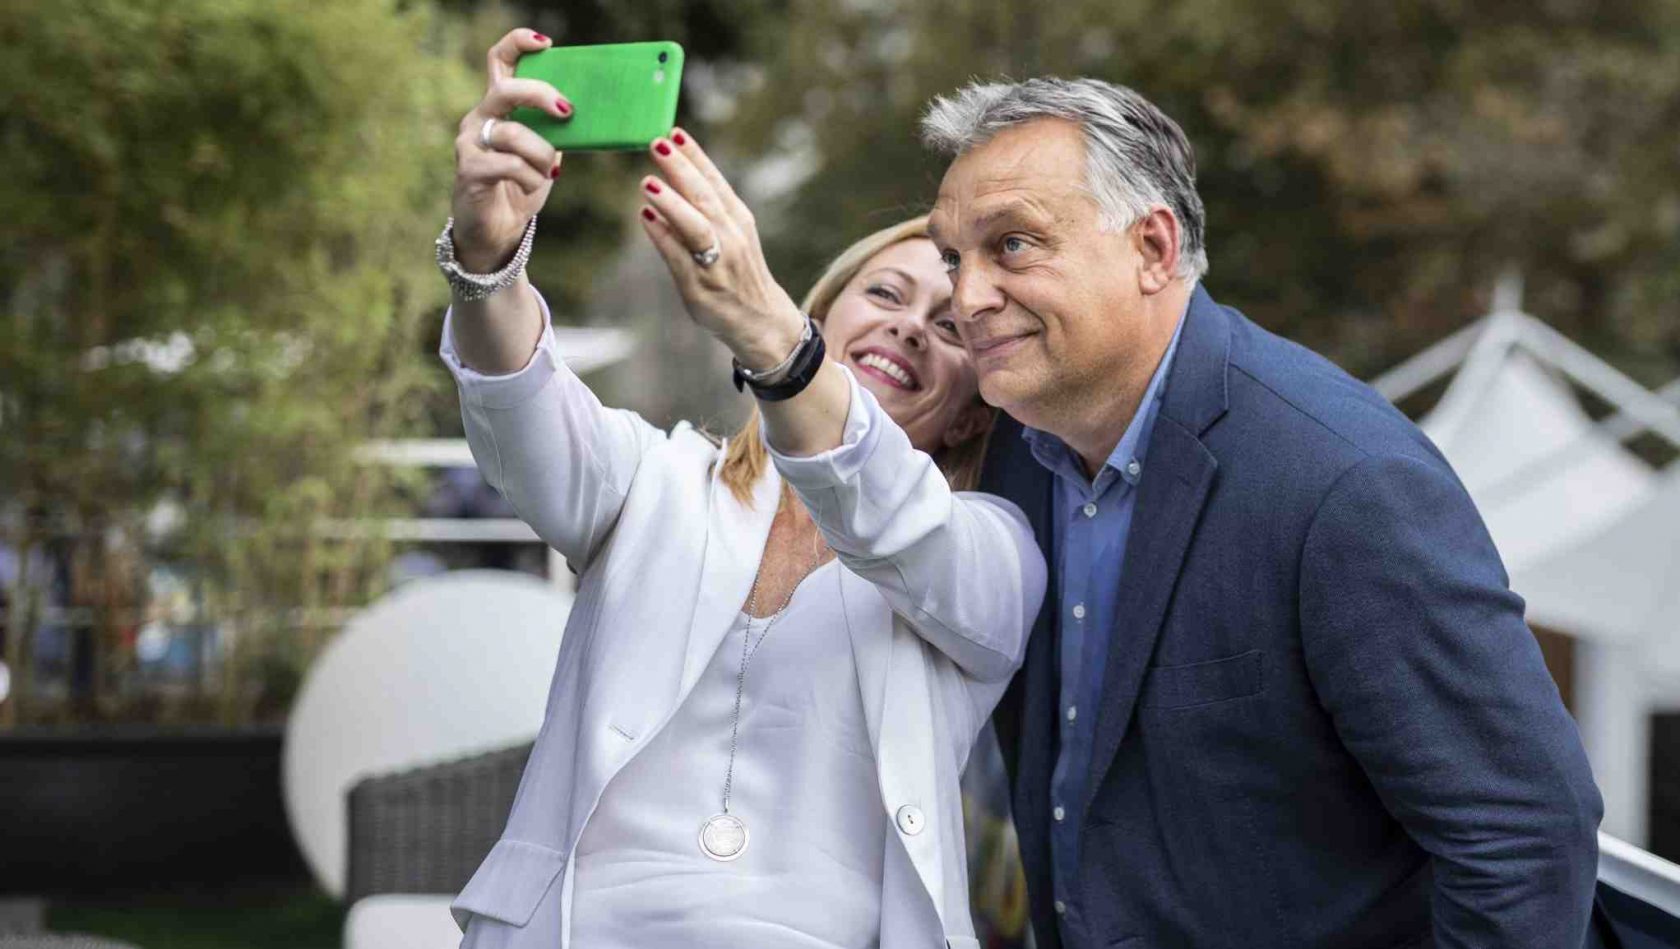 Orbán il sovranista e la “purezza razziale”